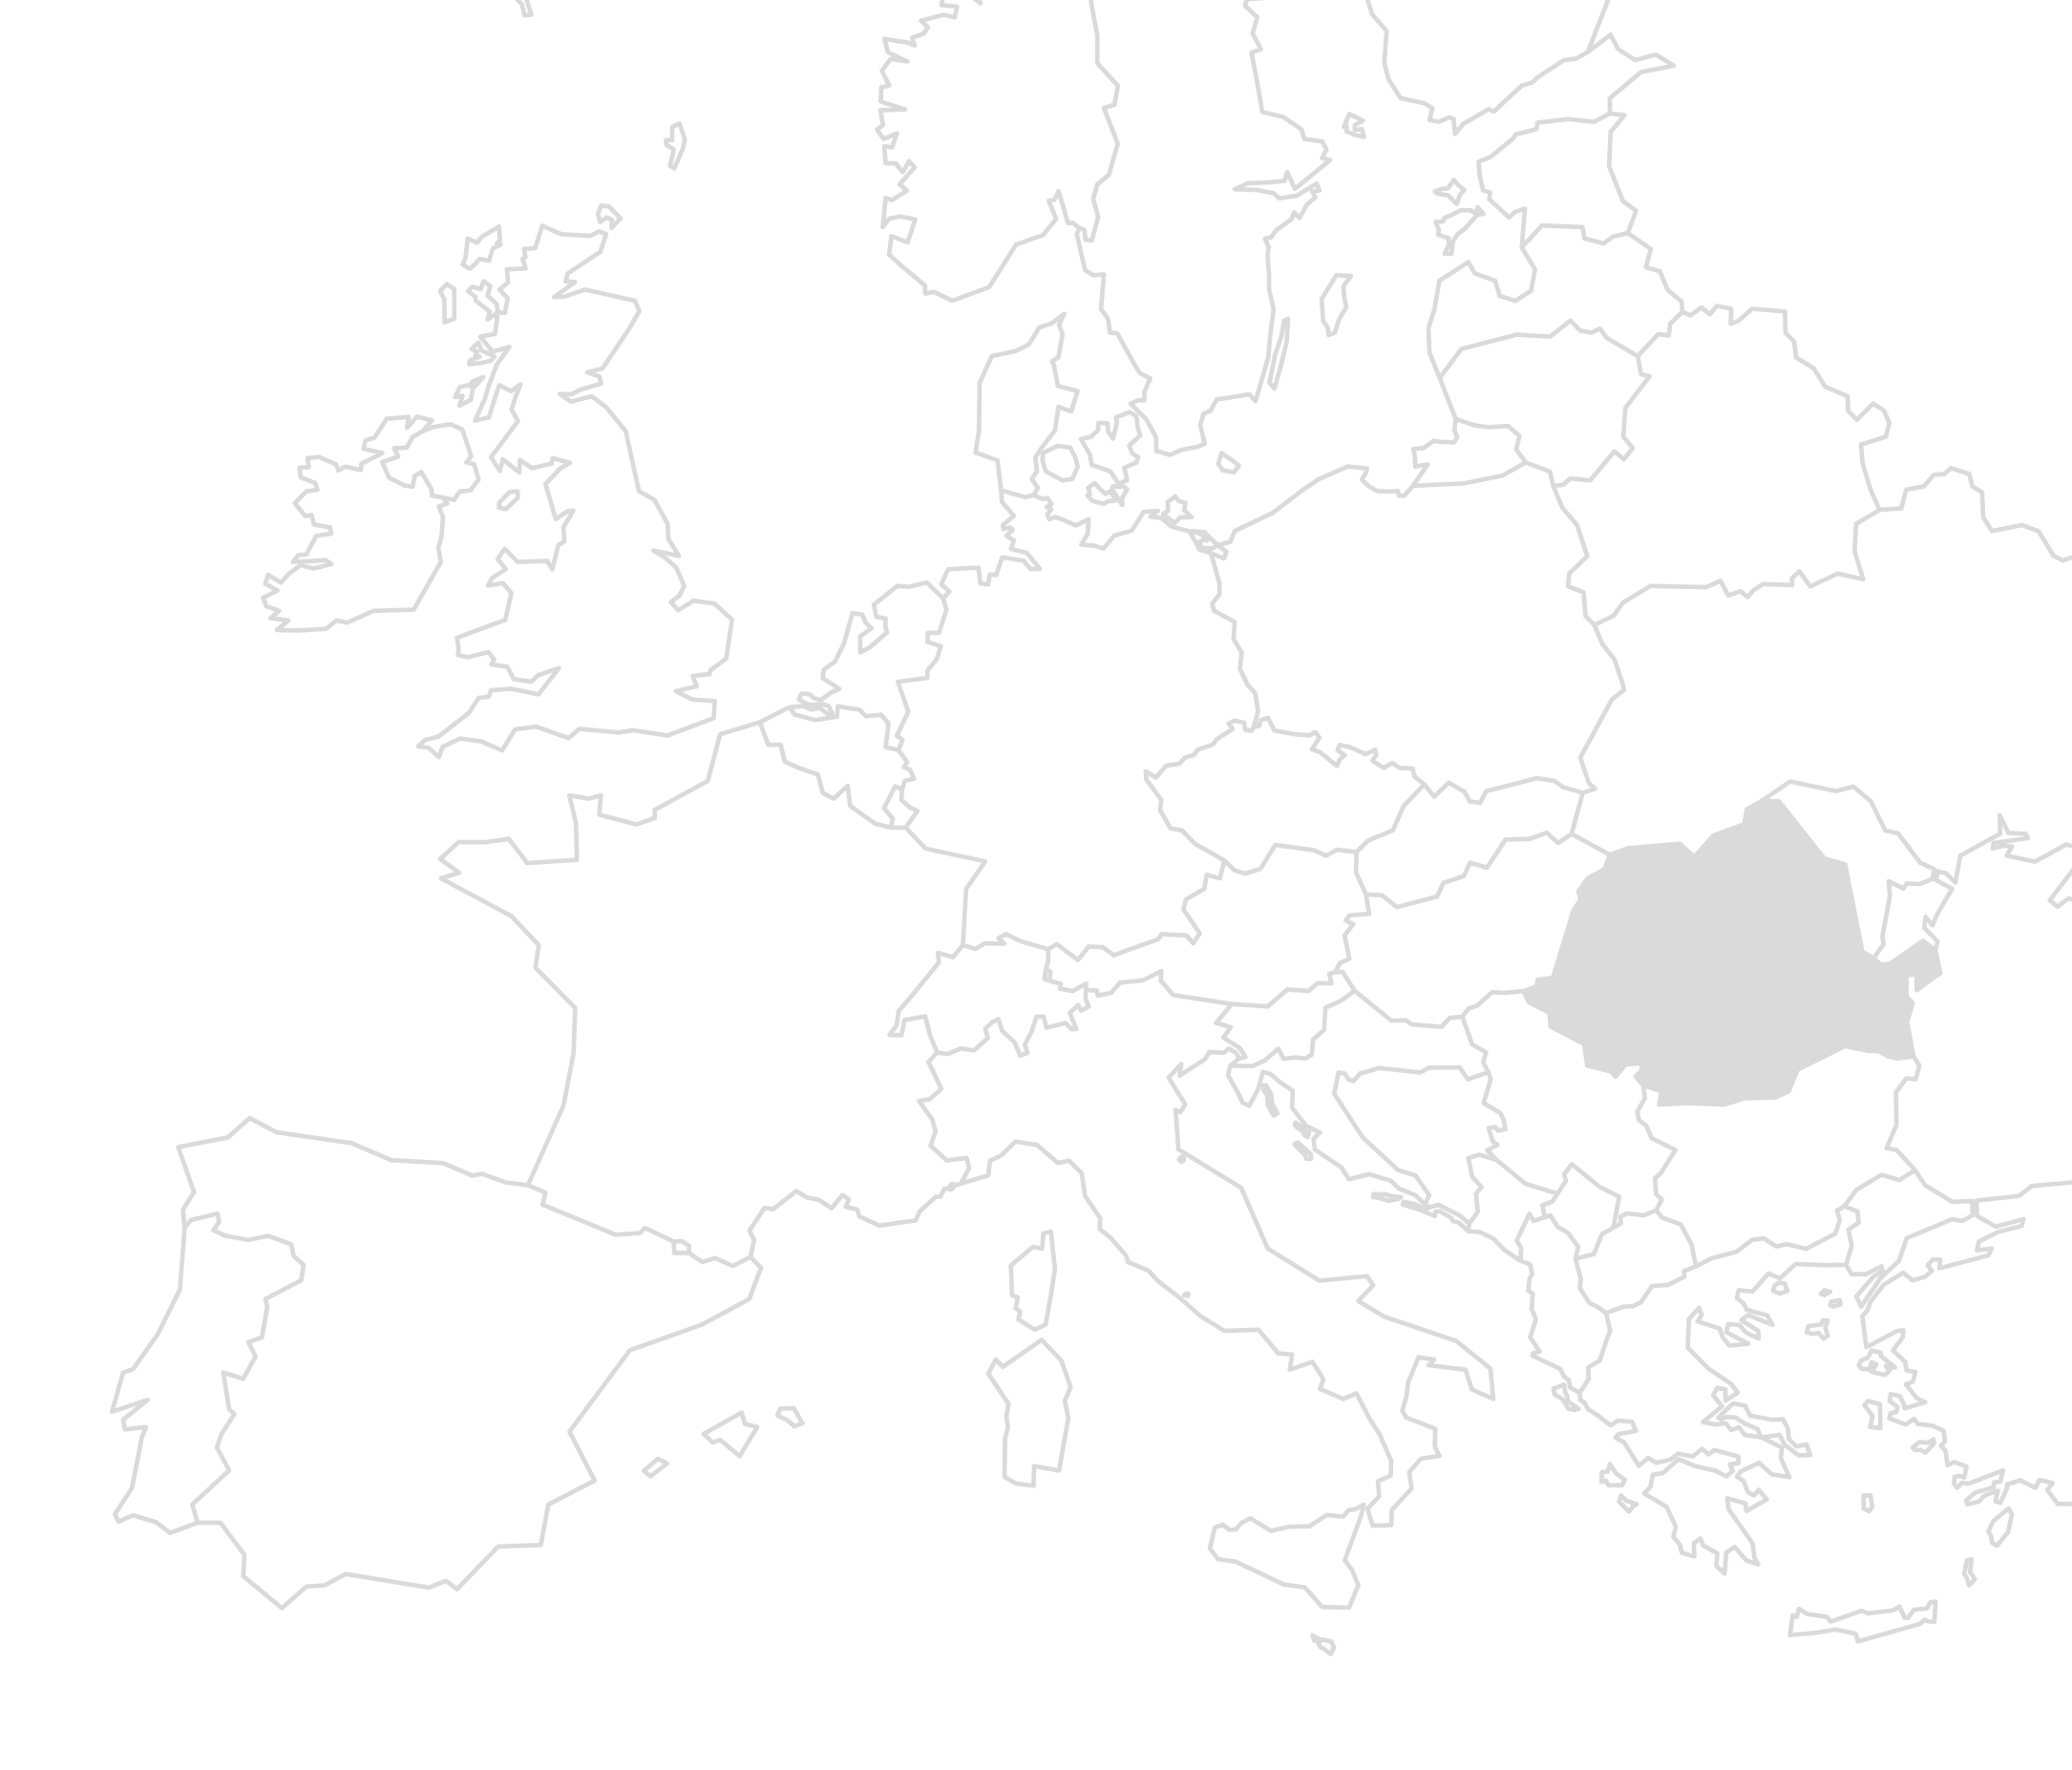 Karte von Europa in Graustufen, mit Rumänien hervorgehoben in dunklerem Grau.